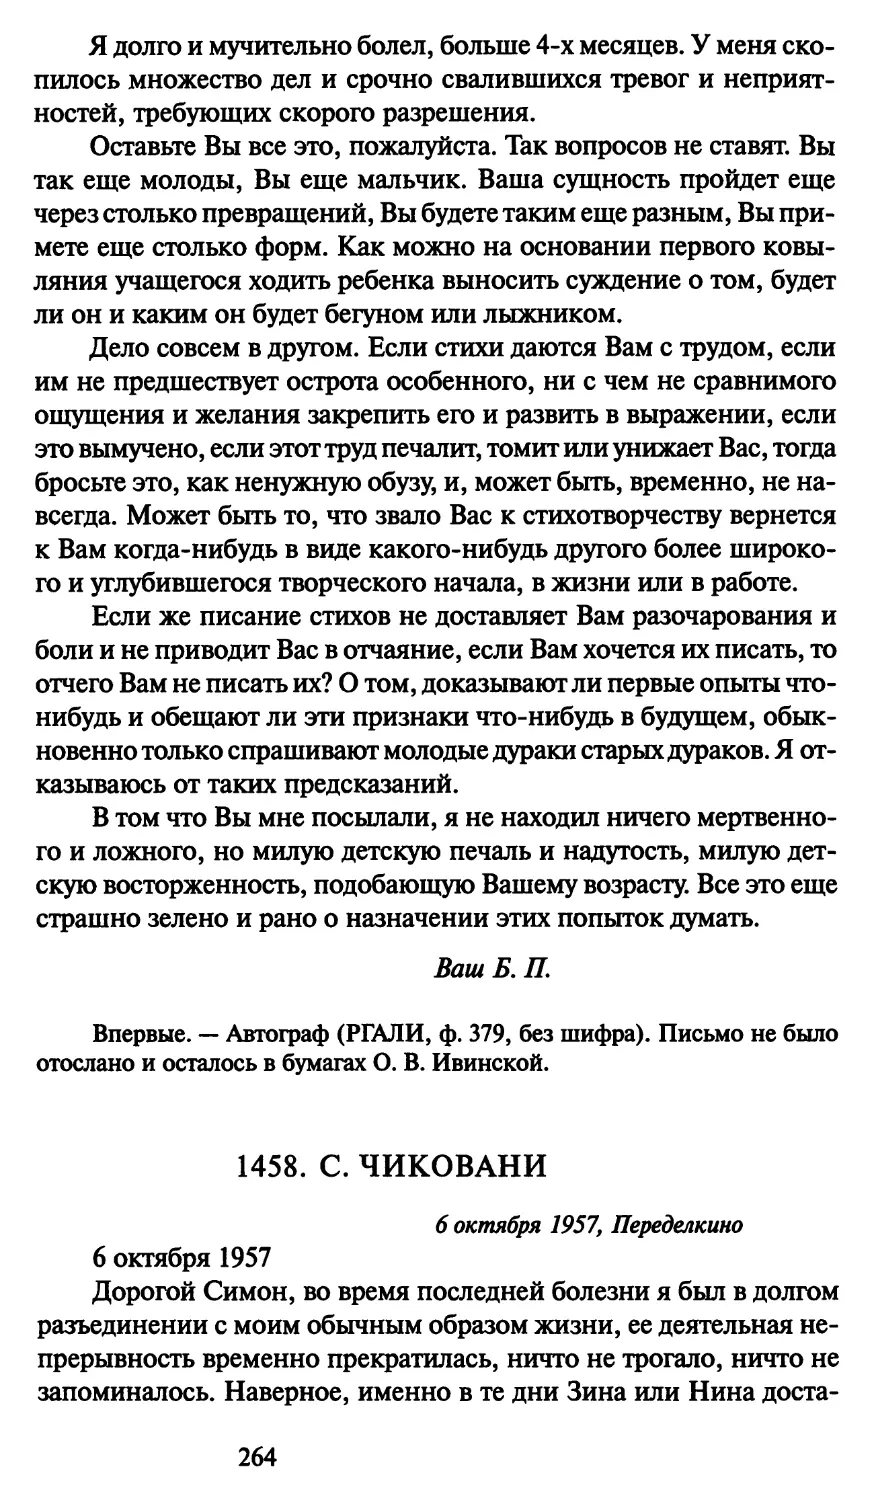 1458. С. Чиковани 6 октября 1957